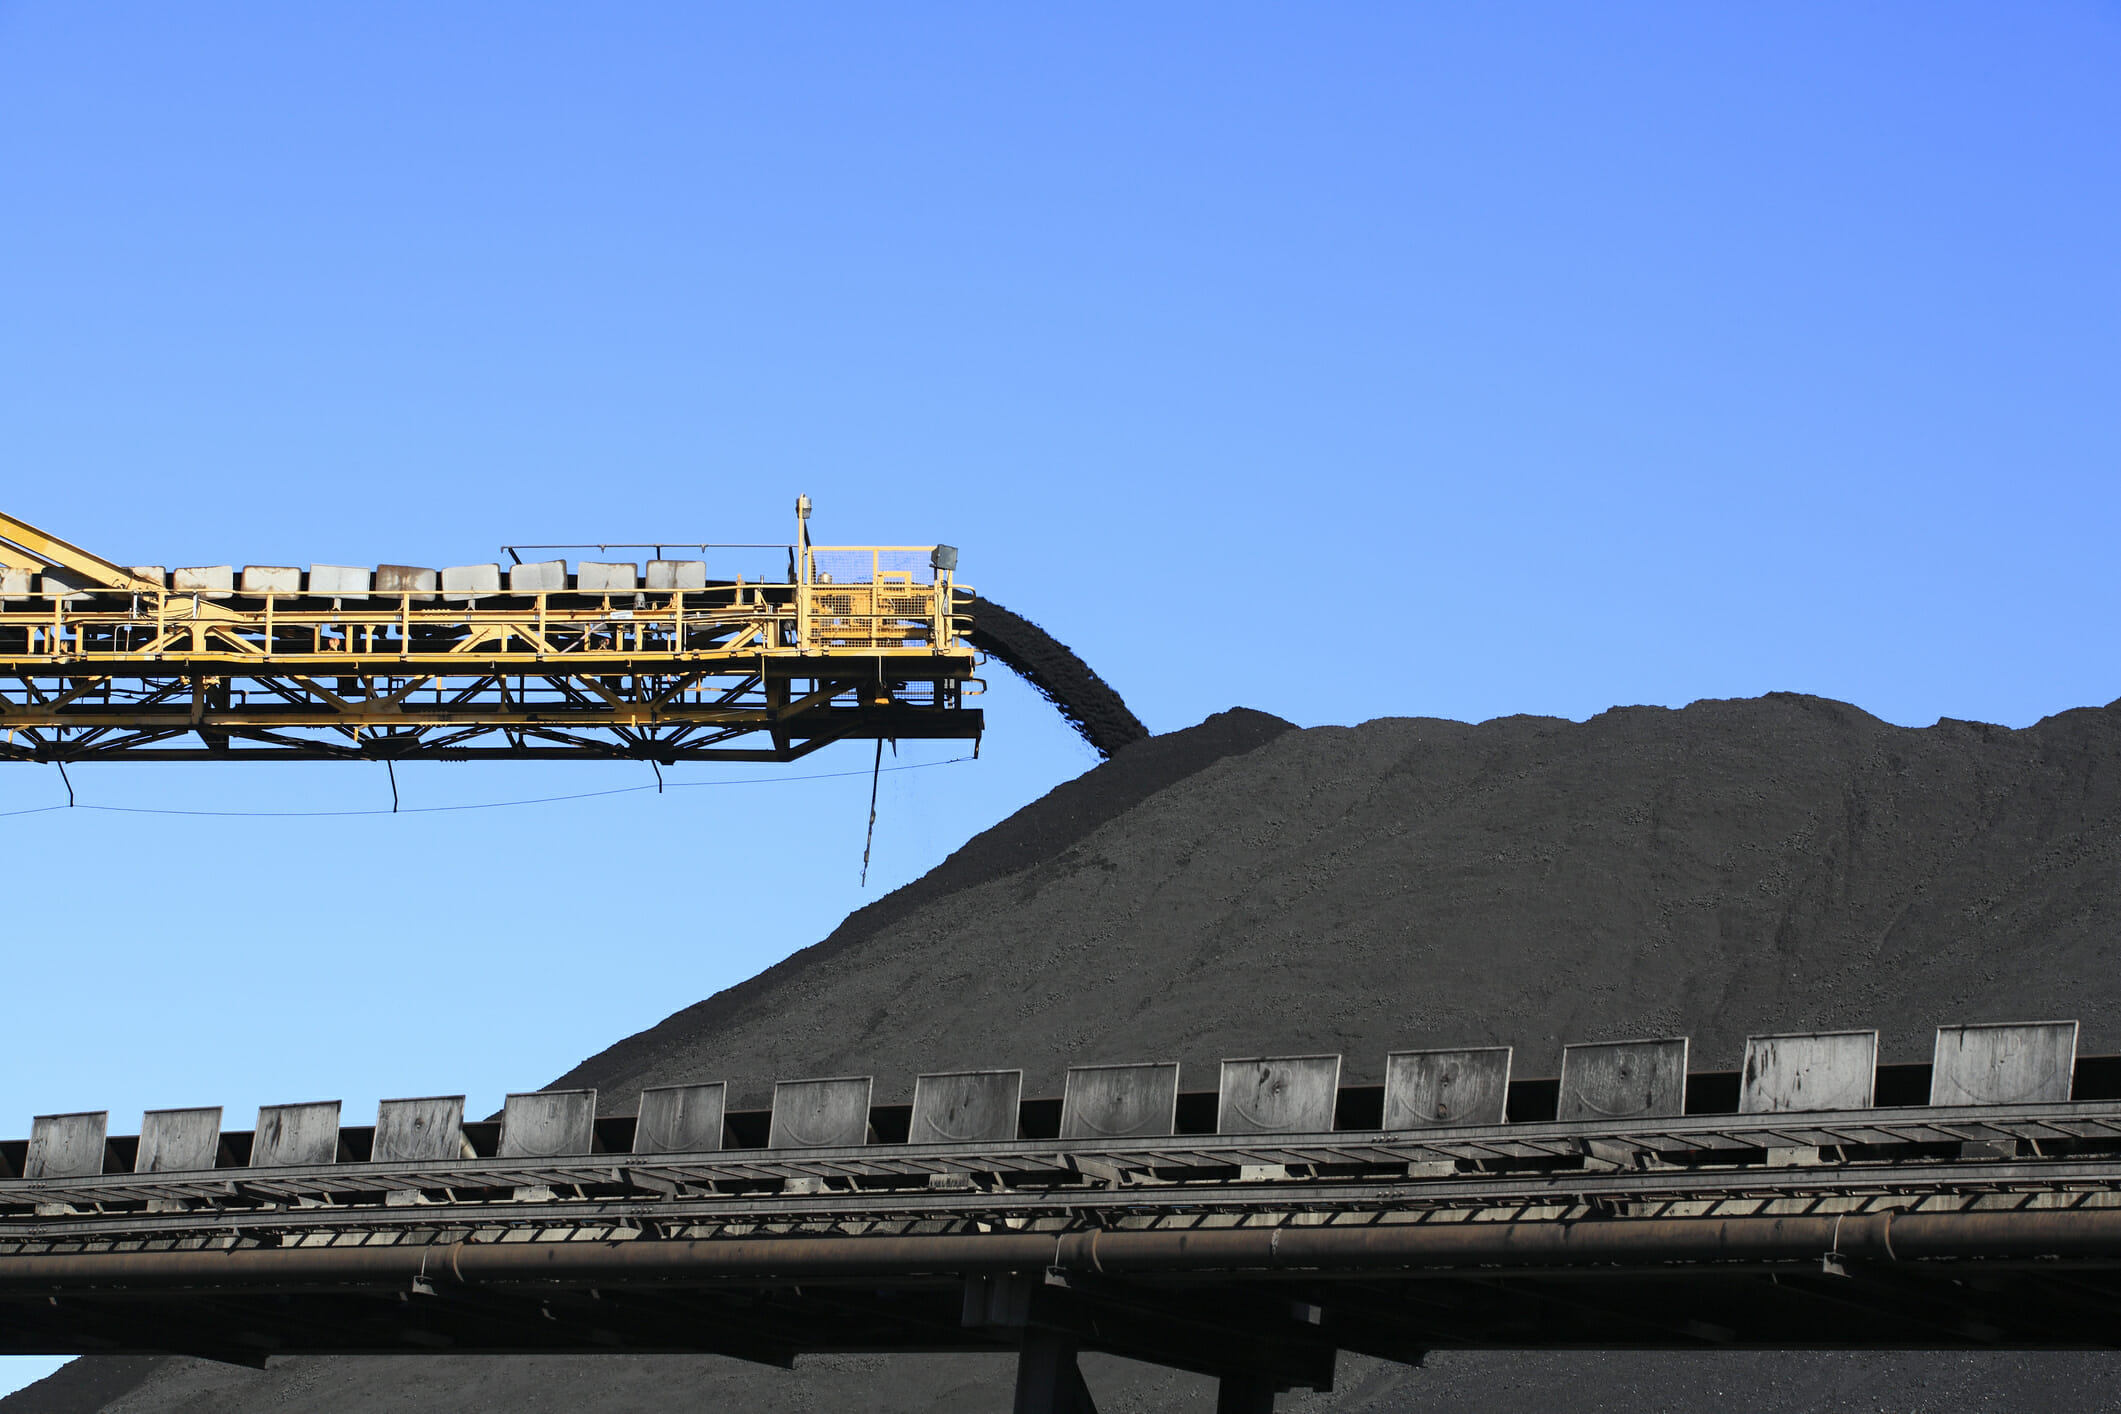 A conveyor belt carrying coal.